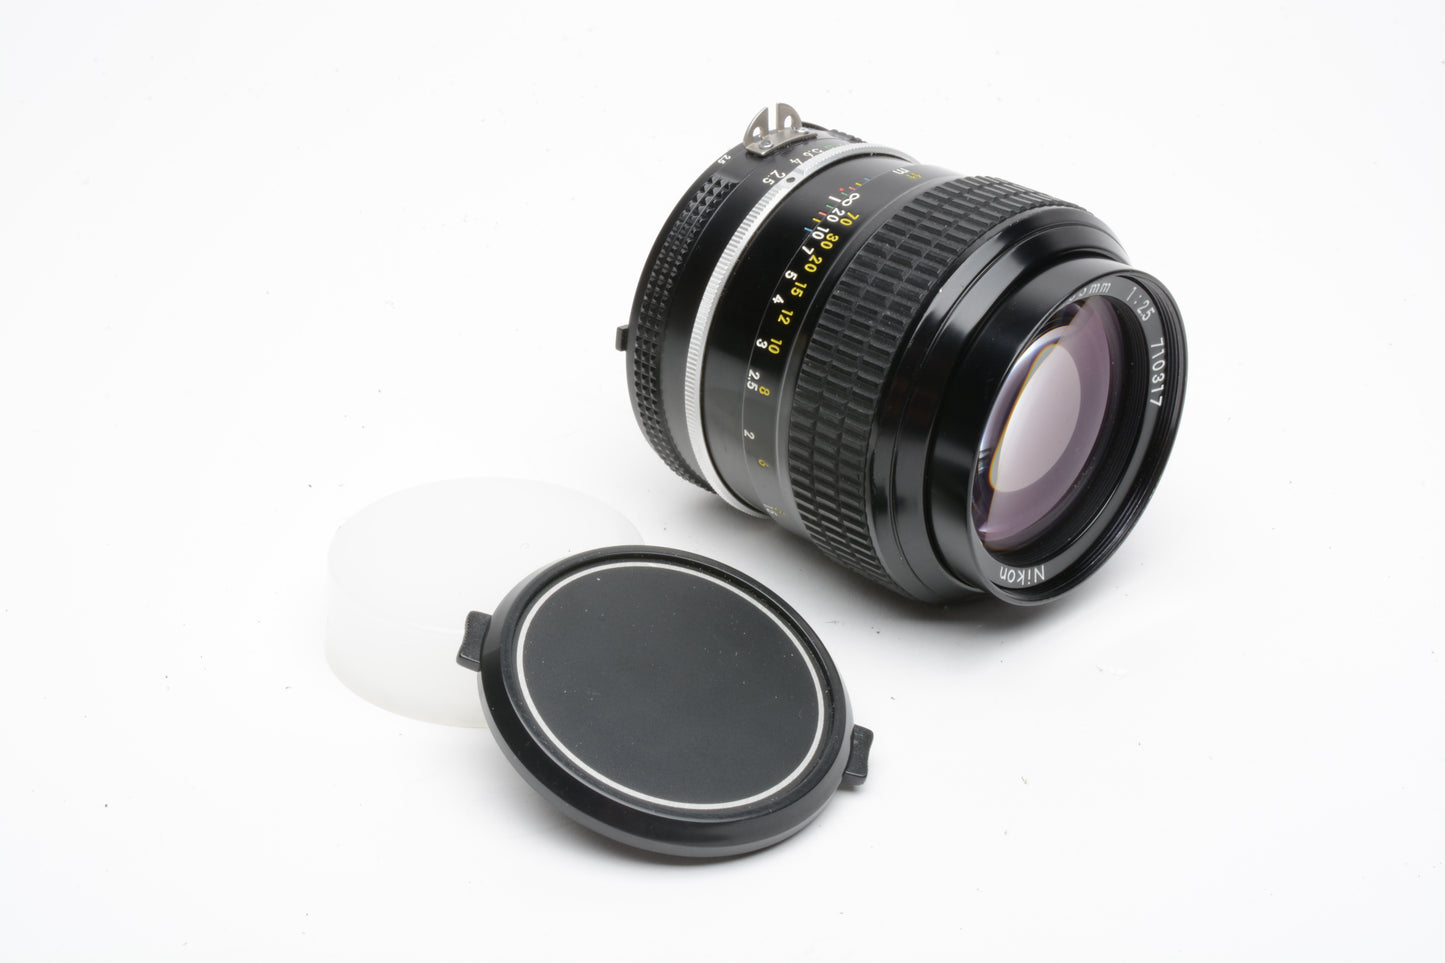 Nikon Nikkor AI 105mm f2.5 portrait lens, caps, very clean & sharp!